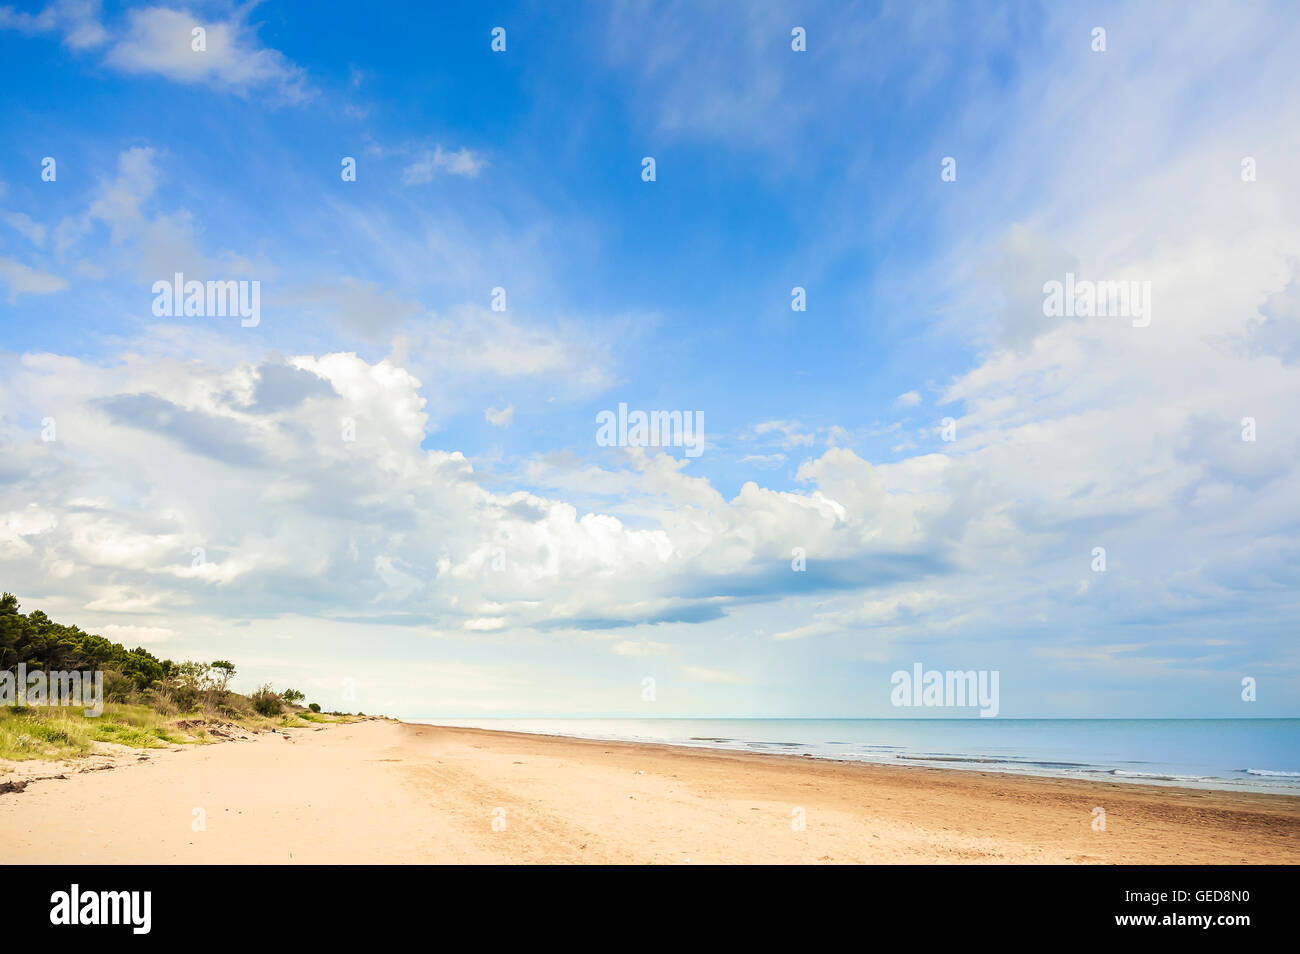 Vue sur la plage, la végétation, la mer et le ciel avec des nuages Banque D'Images